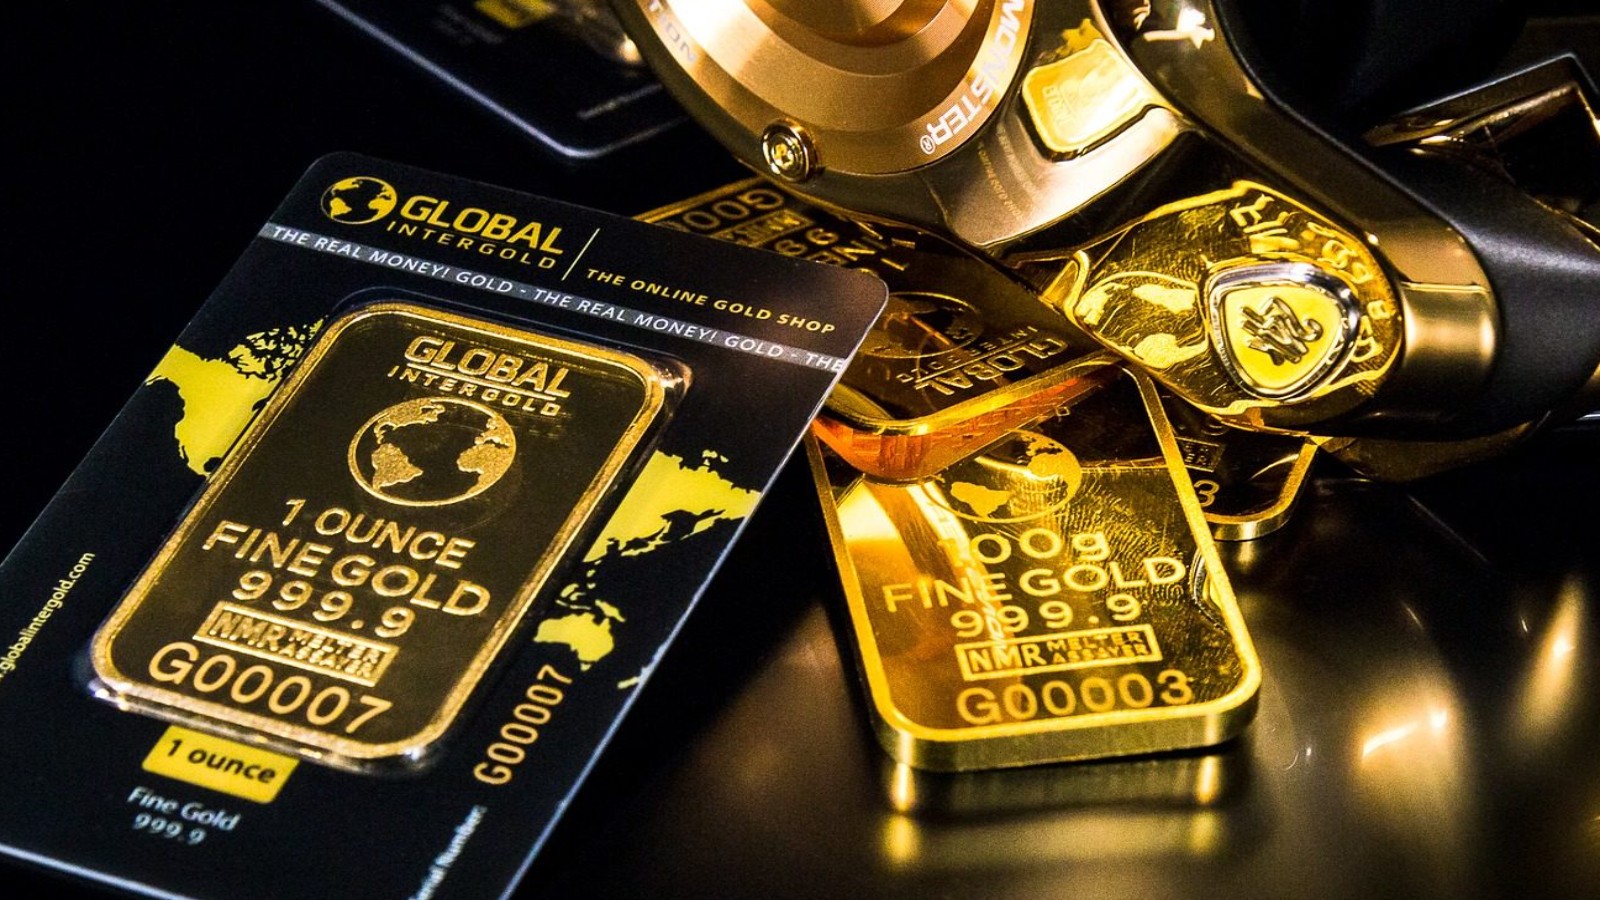 ทองคำแข็งค่าขึ้นอย่างต่อเนื่อง ขณะที่ค่าเงินหยวนของจีนที่ร่วงลงอย่างหนัก